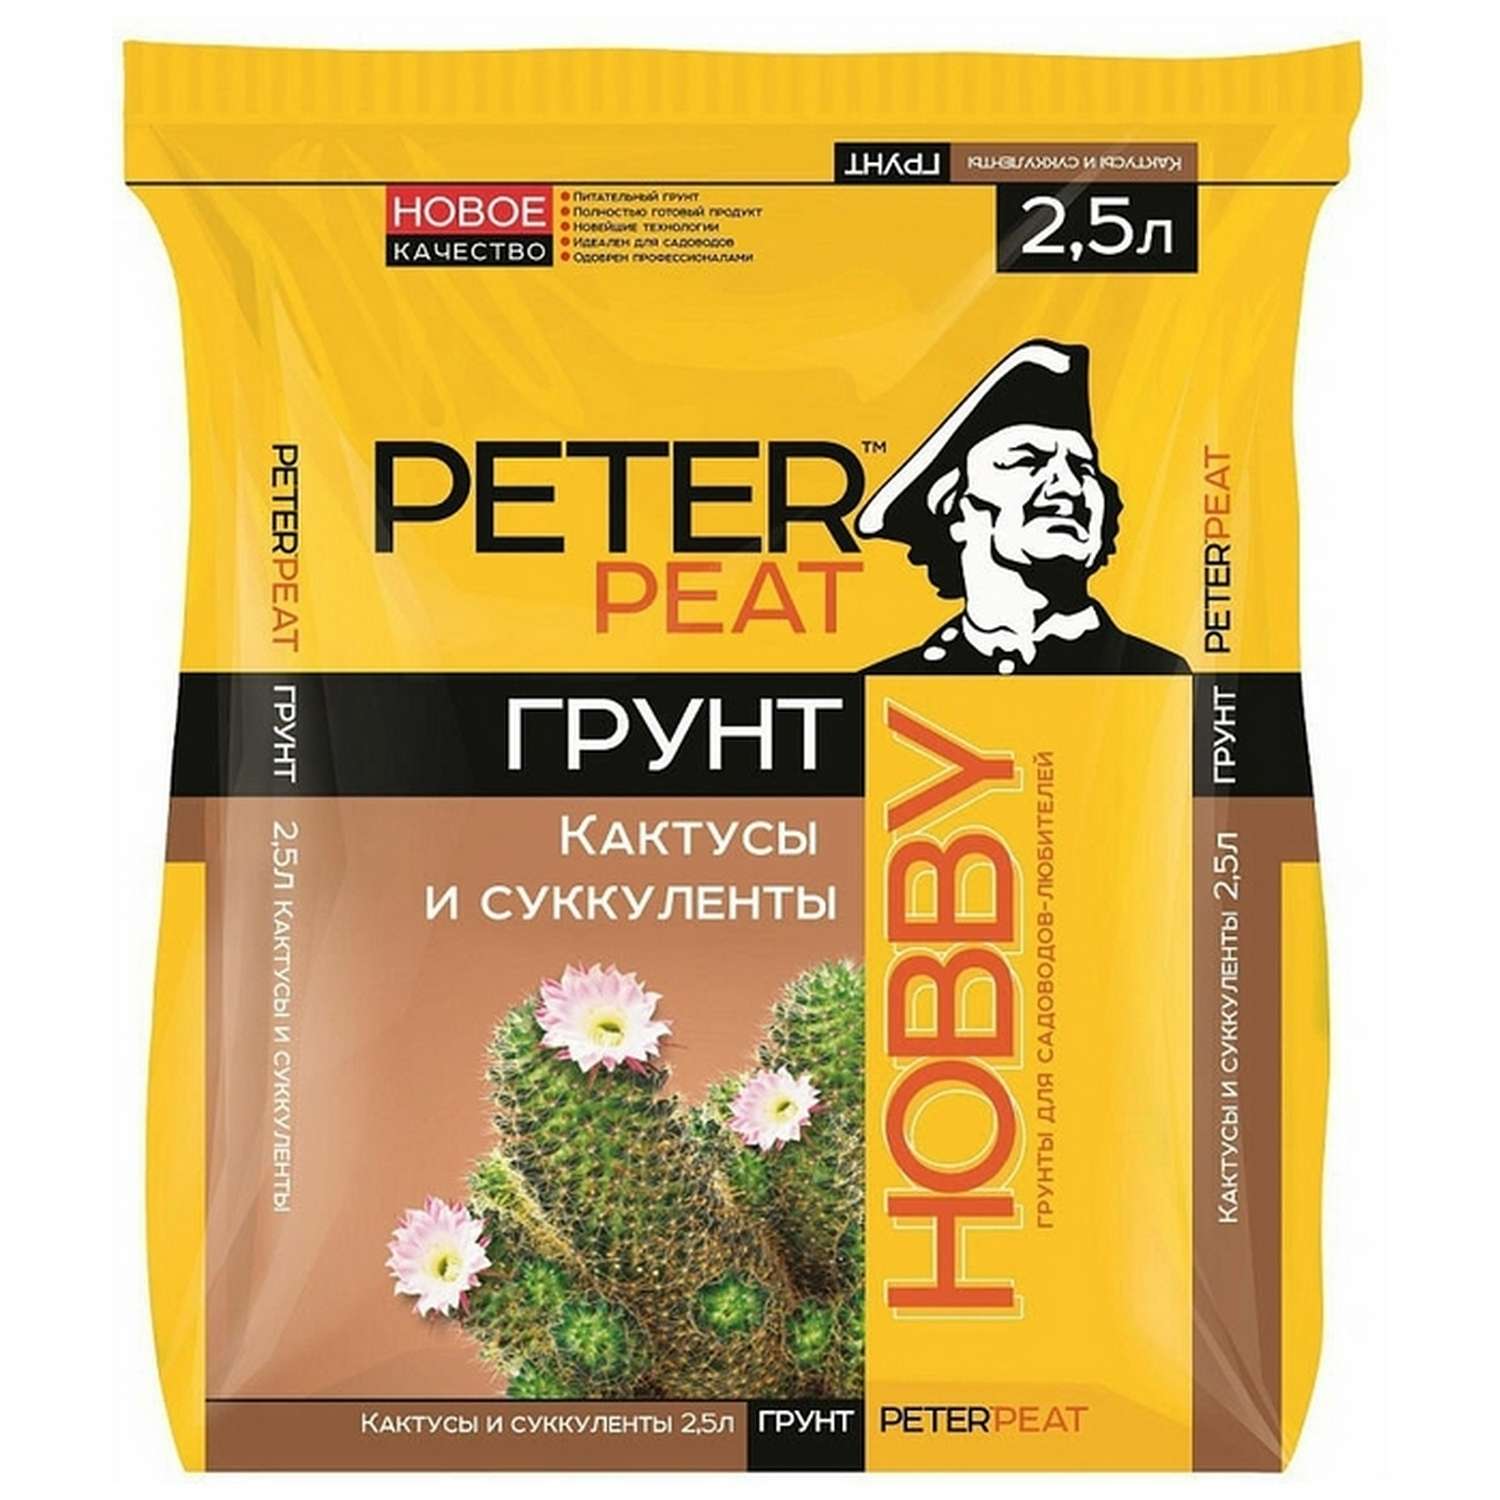 Грунт PETER PEAT Для кактусов и суккулентов линия Хобби 2.5л - фото 1